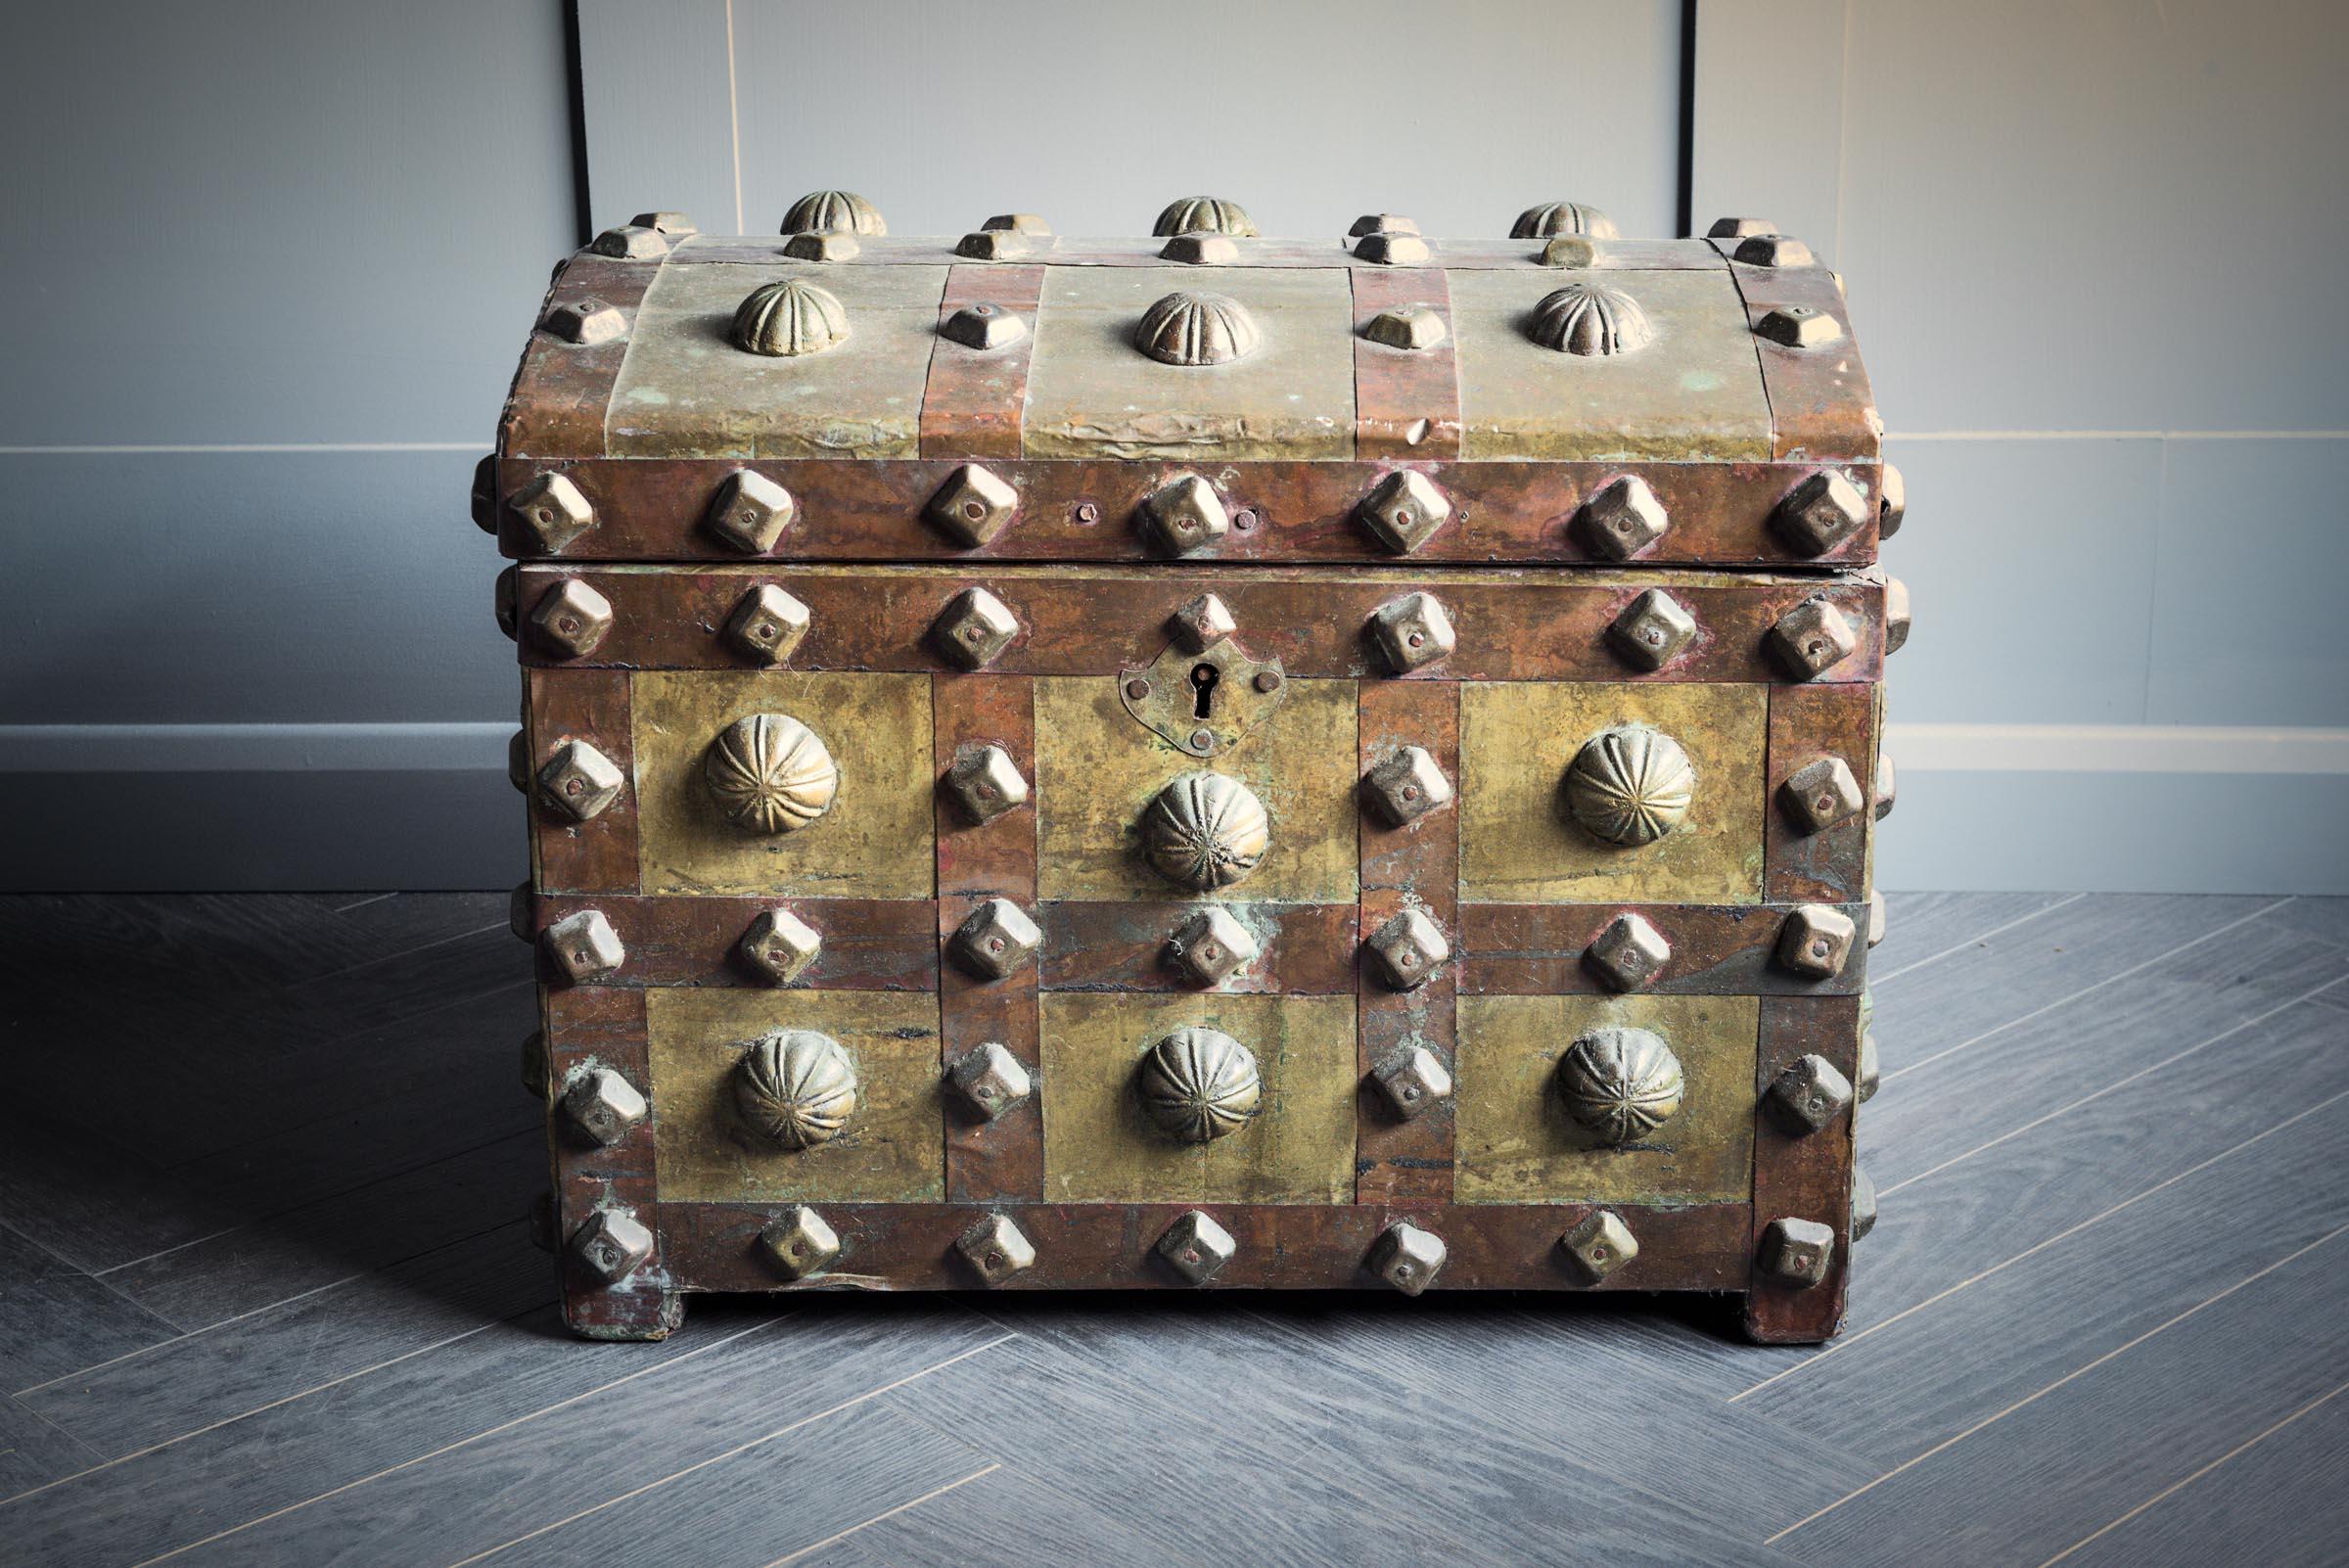 Eine mittelgroße Berber-Aussteuertruhe westafrikanischer Herkunft, deren Außenseite mit Metallzwiebeln kunstvoll verziert ist. Der Deckel lässt sich an zwei Metallscharnieren öffnen und gibt den Blick auf ein Mehrzweckfach im Inneren frei. Diese